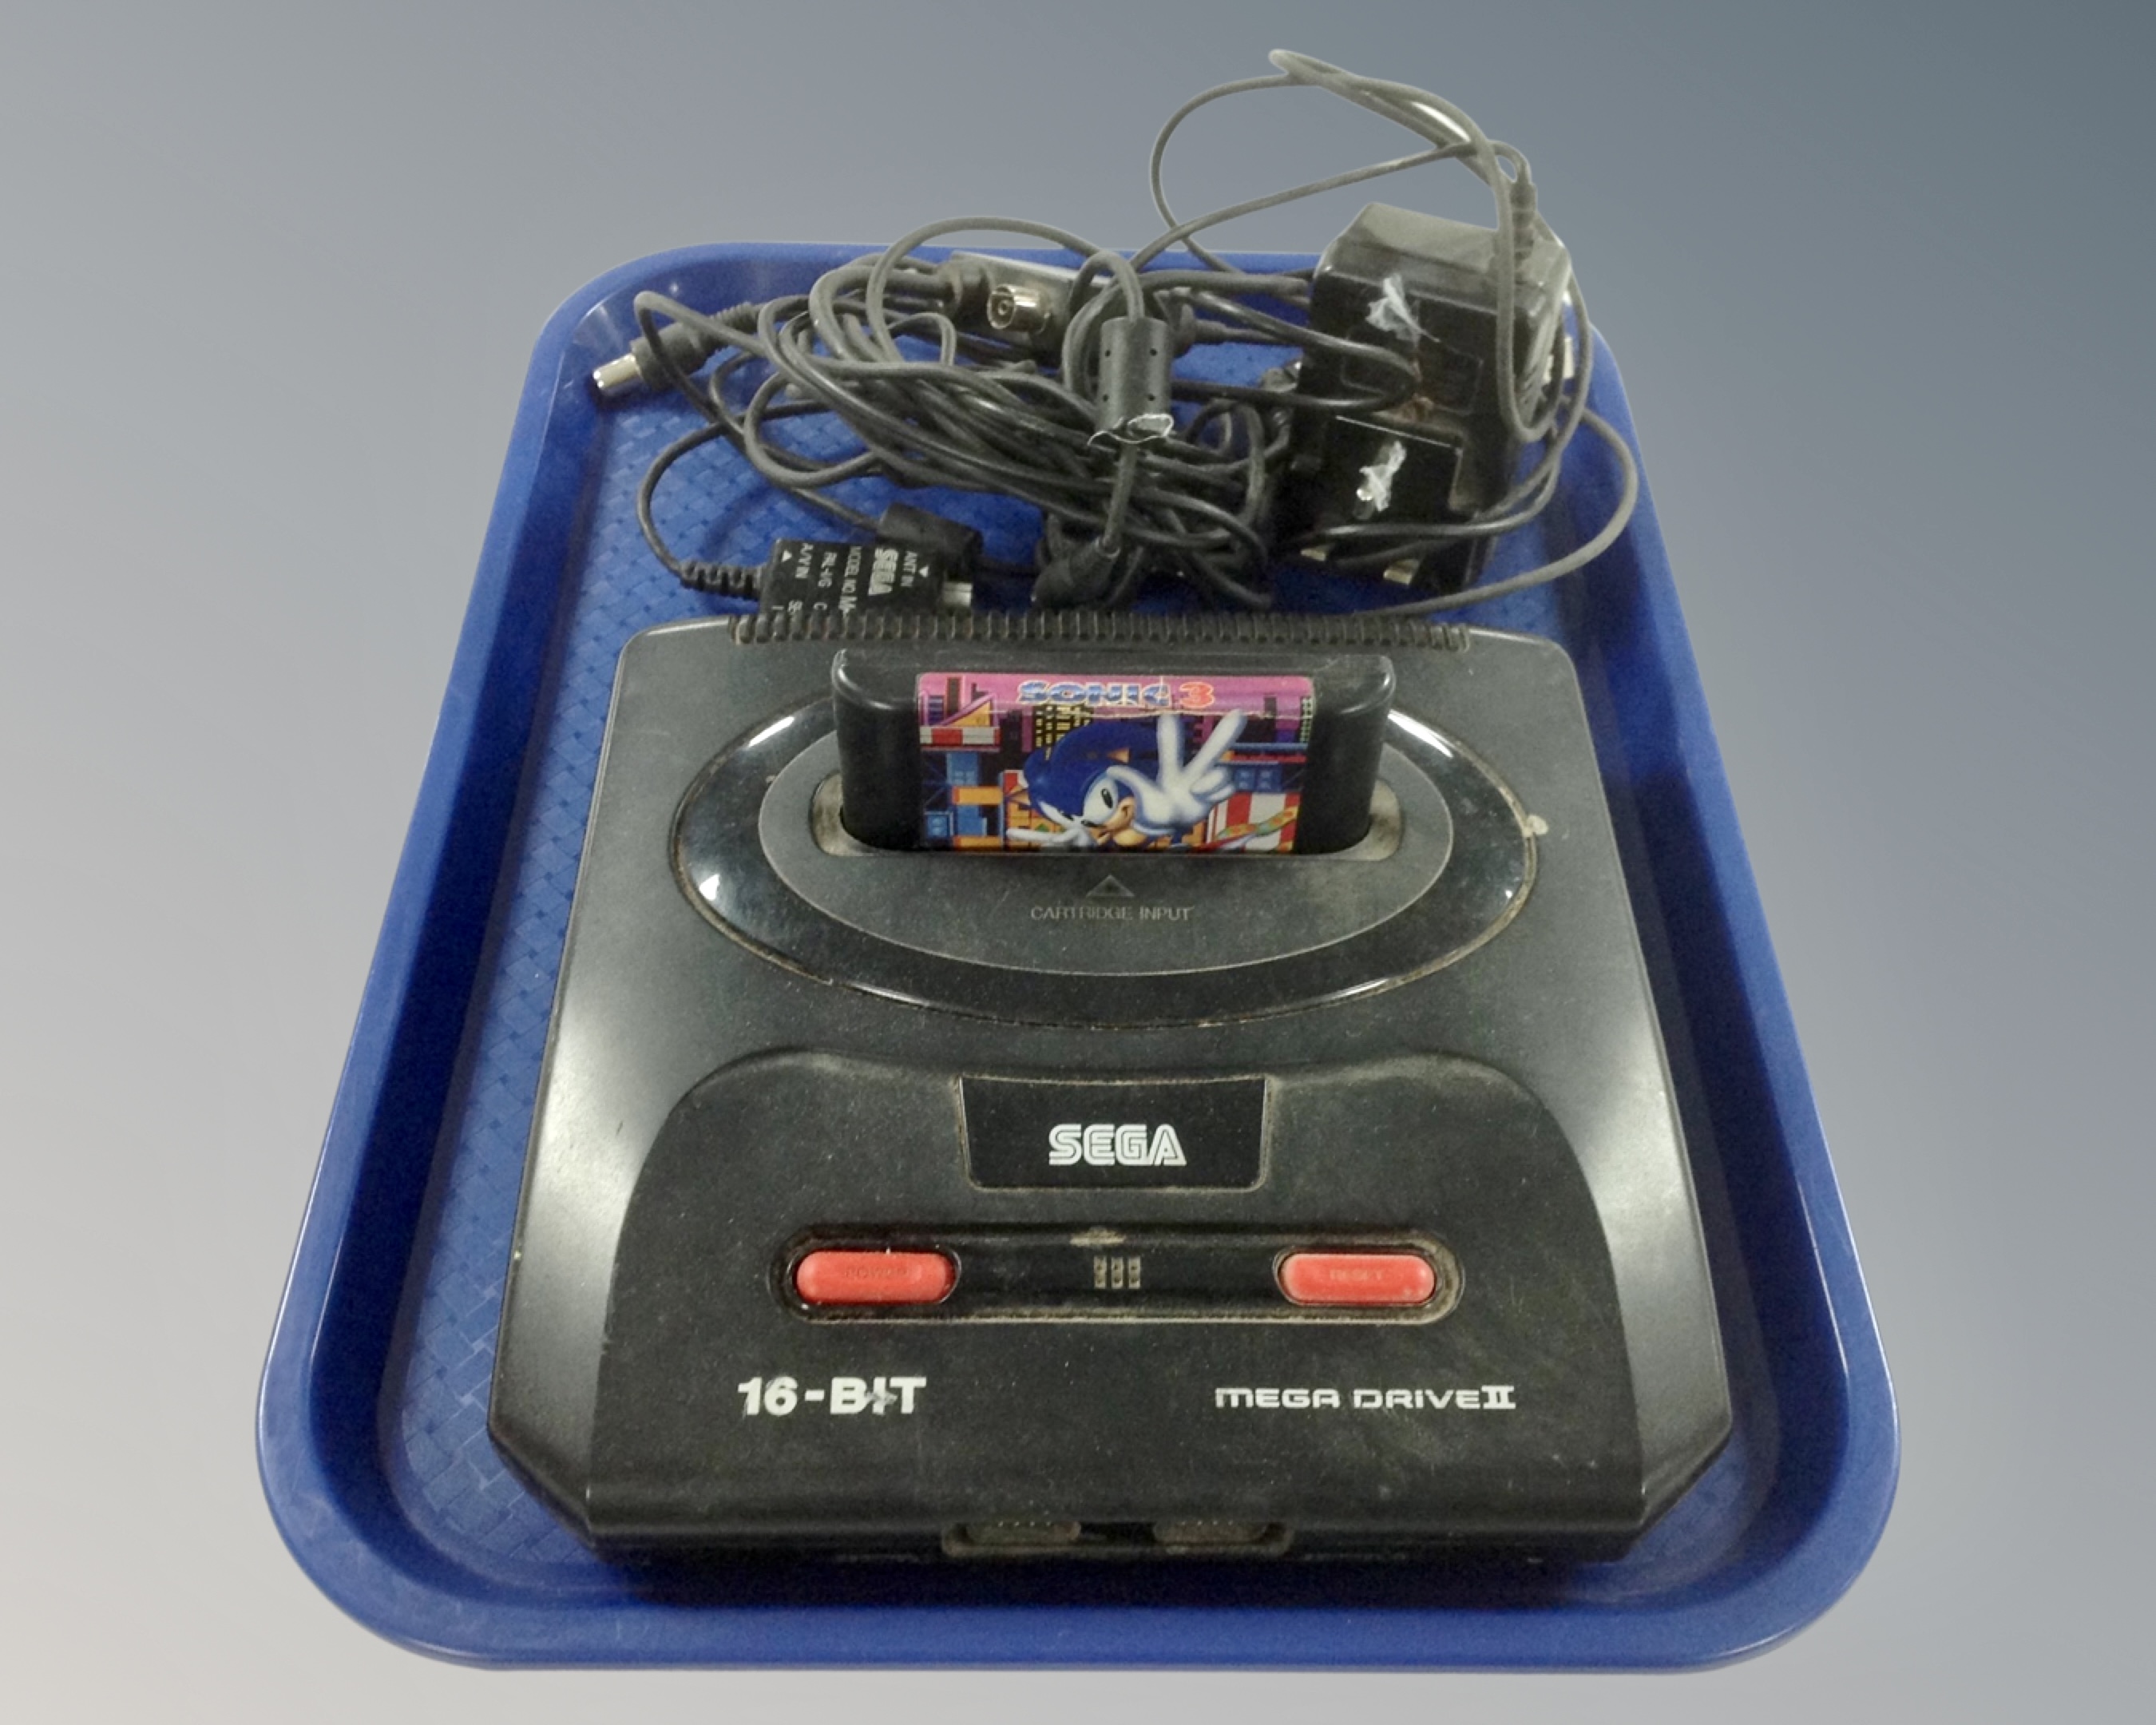 A SEGA Mega Drive II 16-bit games console.